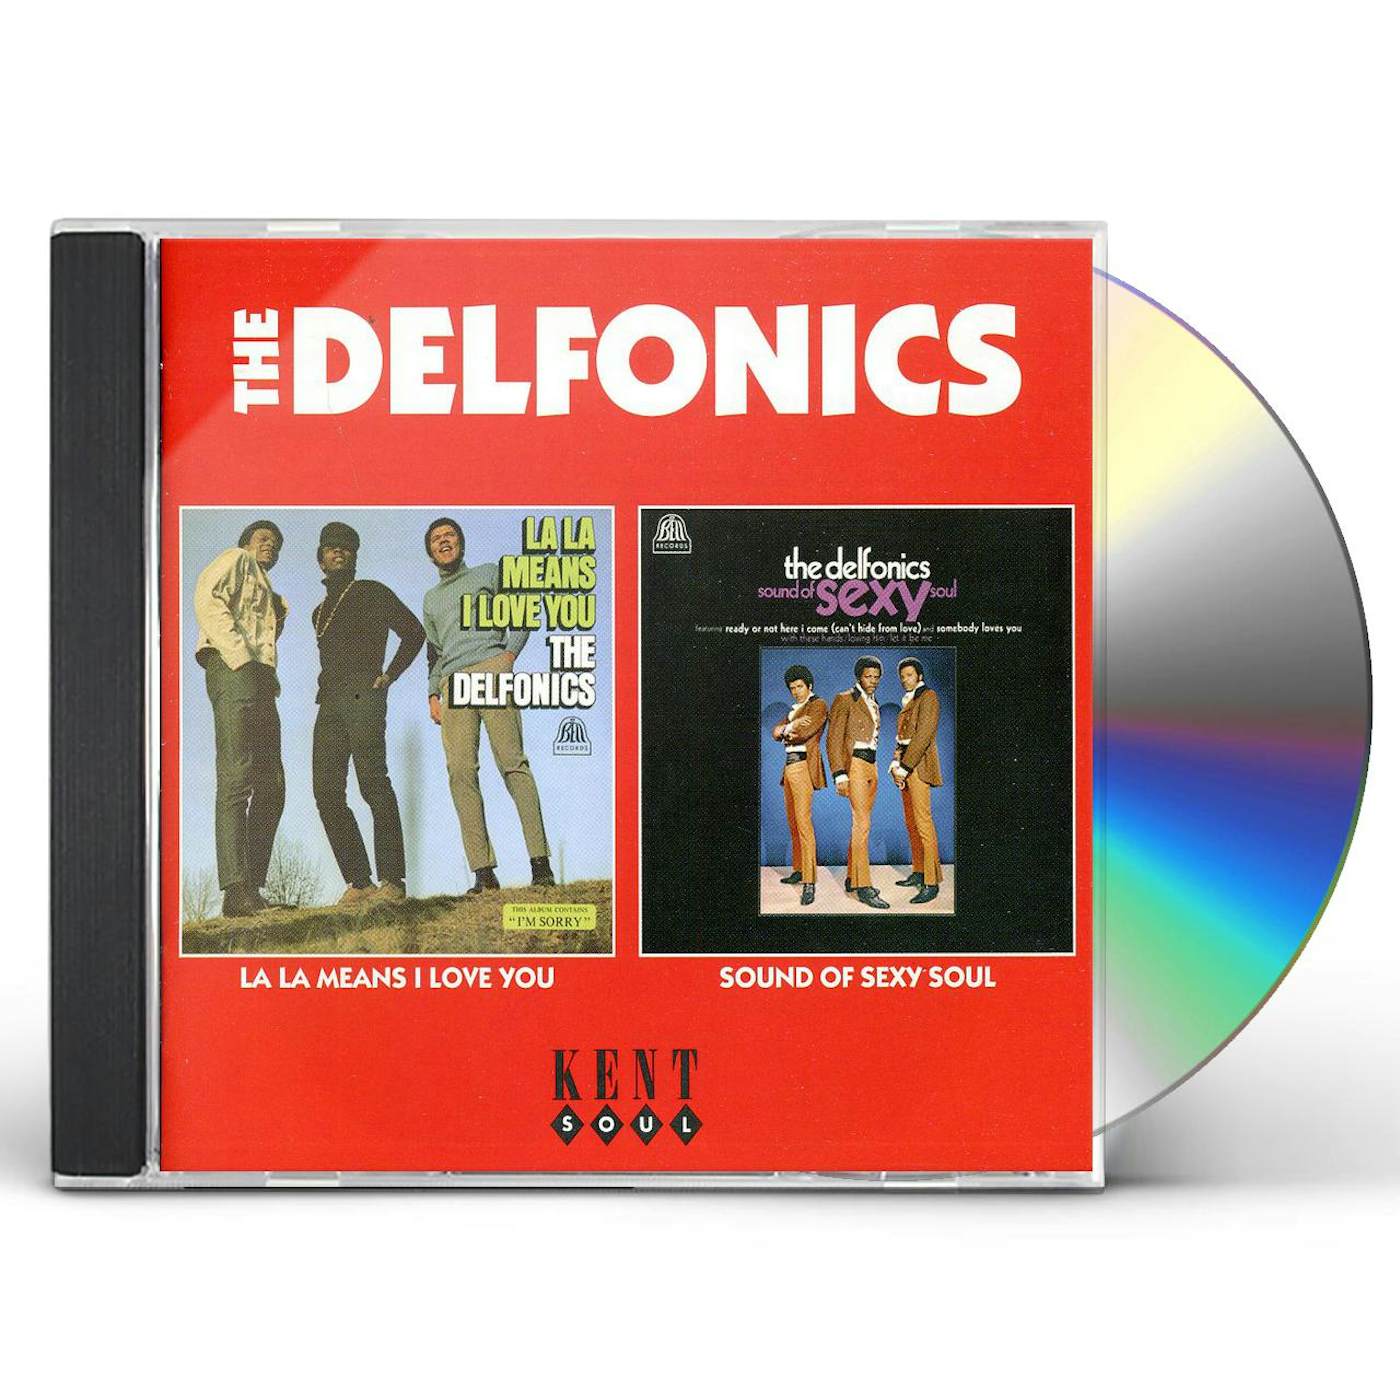 THE DELFONICS LA-LA MEANS I LOVE YOU [BMG] NEW CD